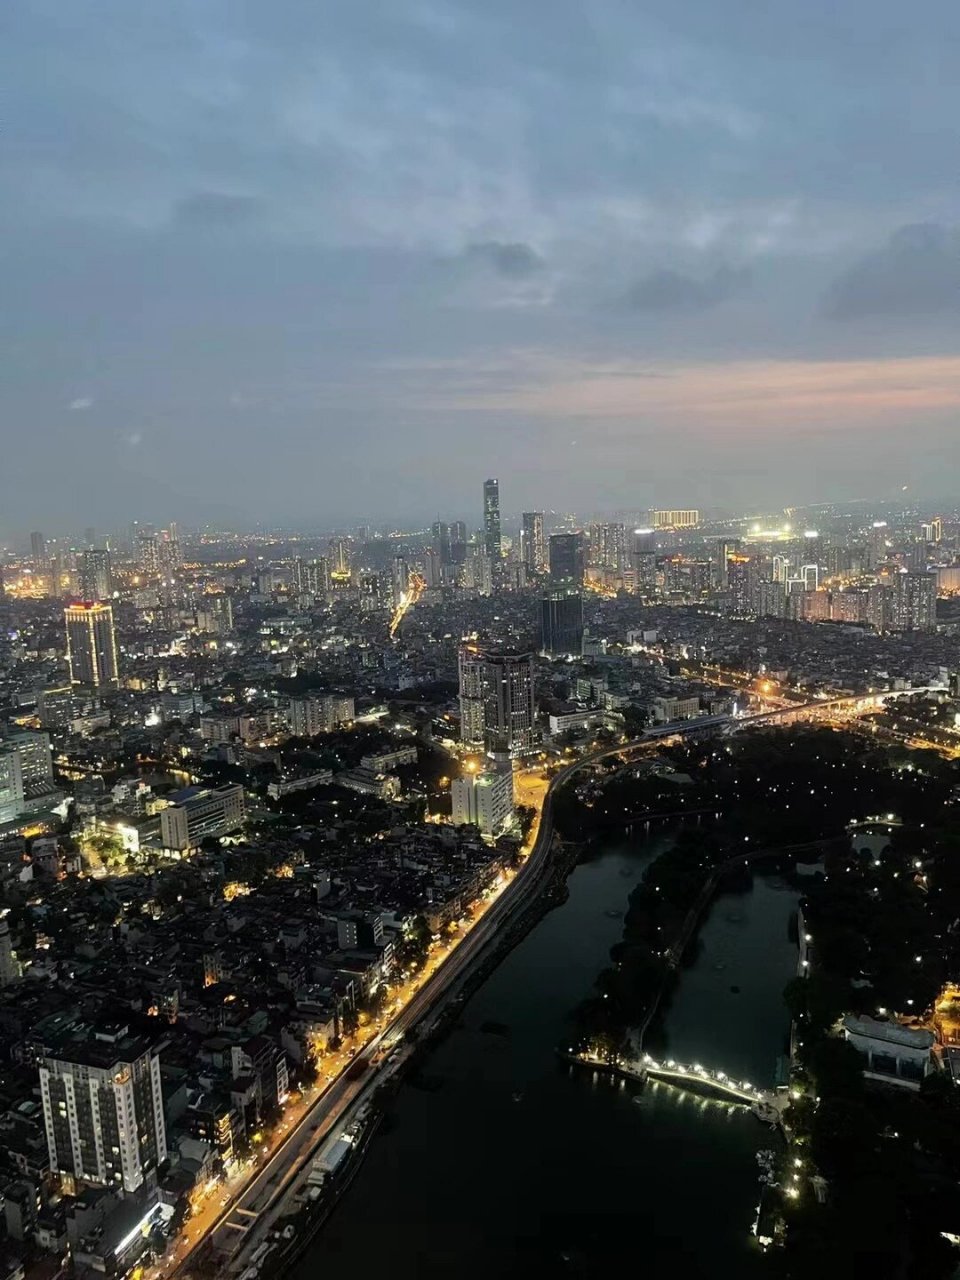 河内很美 在一楼买票是23万越南盾一个人 6点半开始天黑就能看到夜景